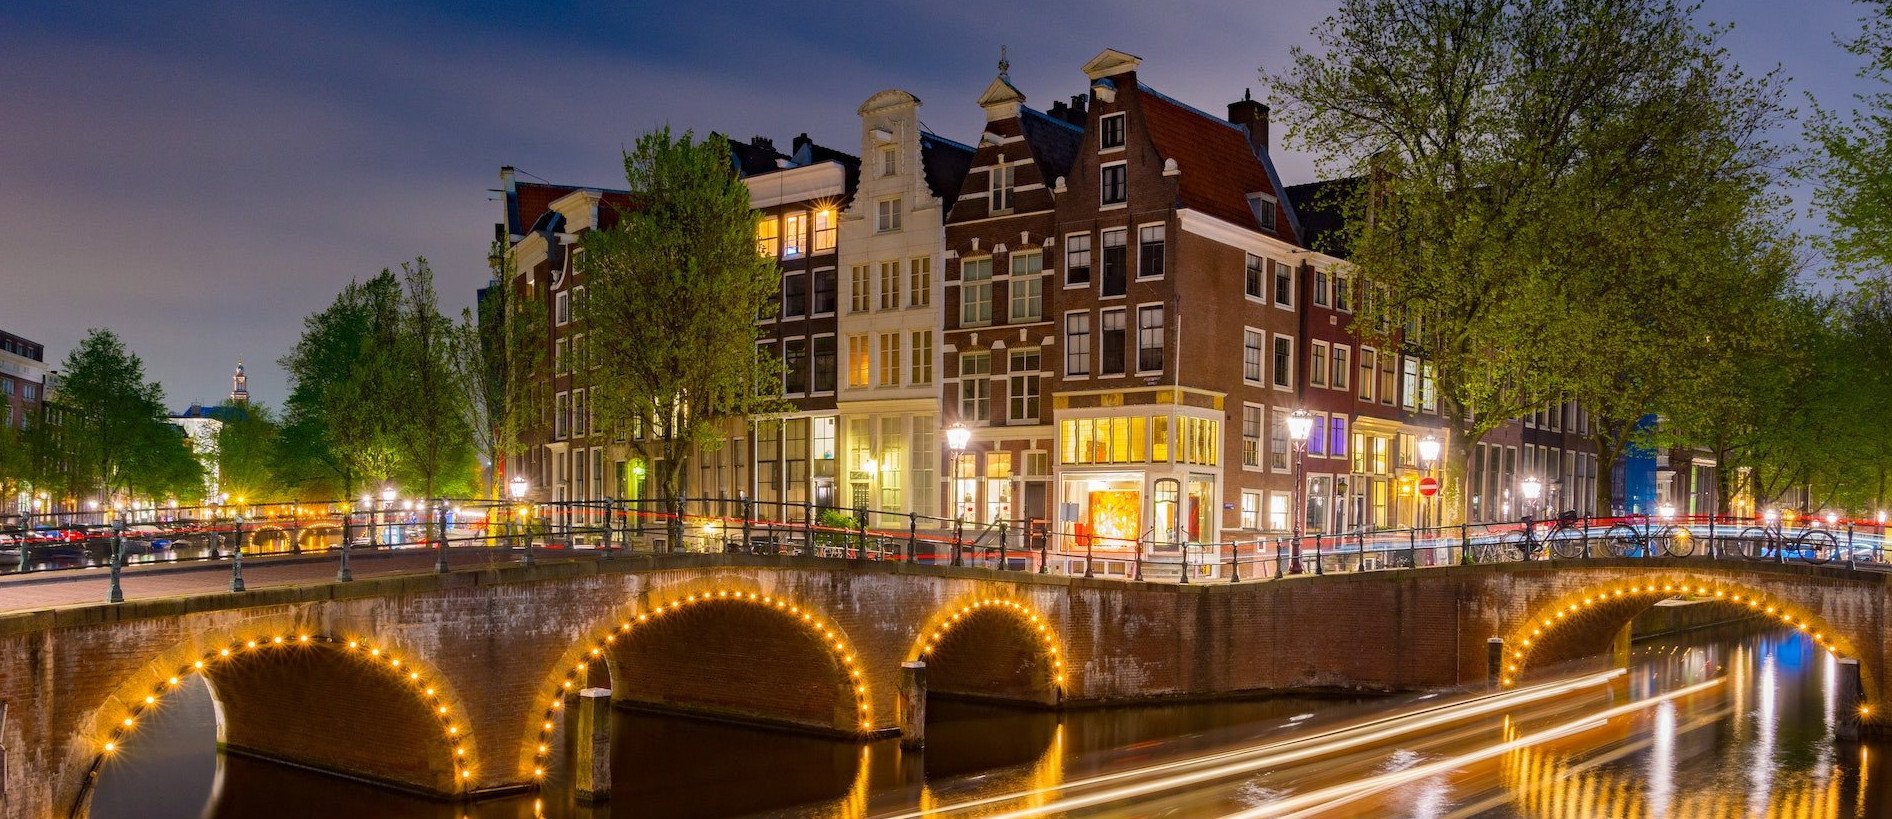 Huizen amsterdamse gracht - Foto door Andrew Hawkes